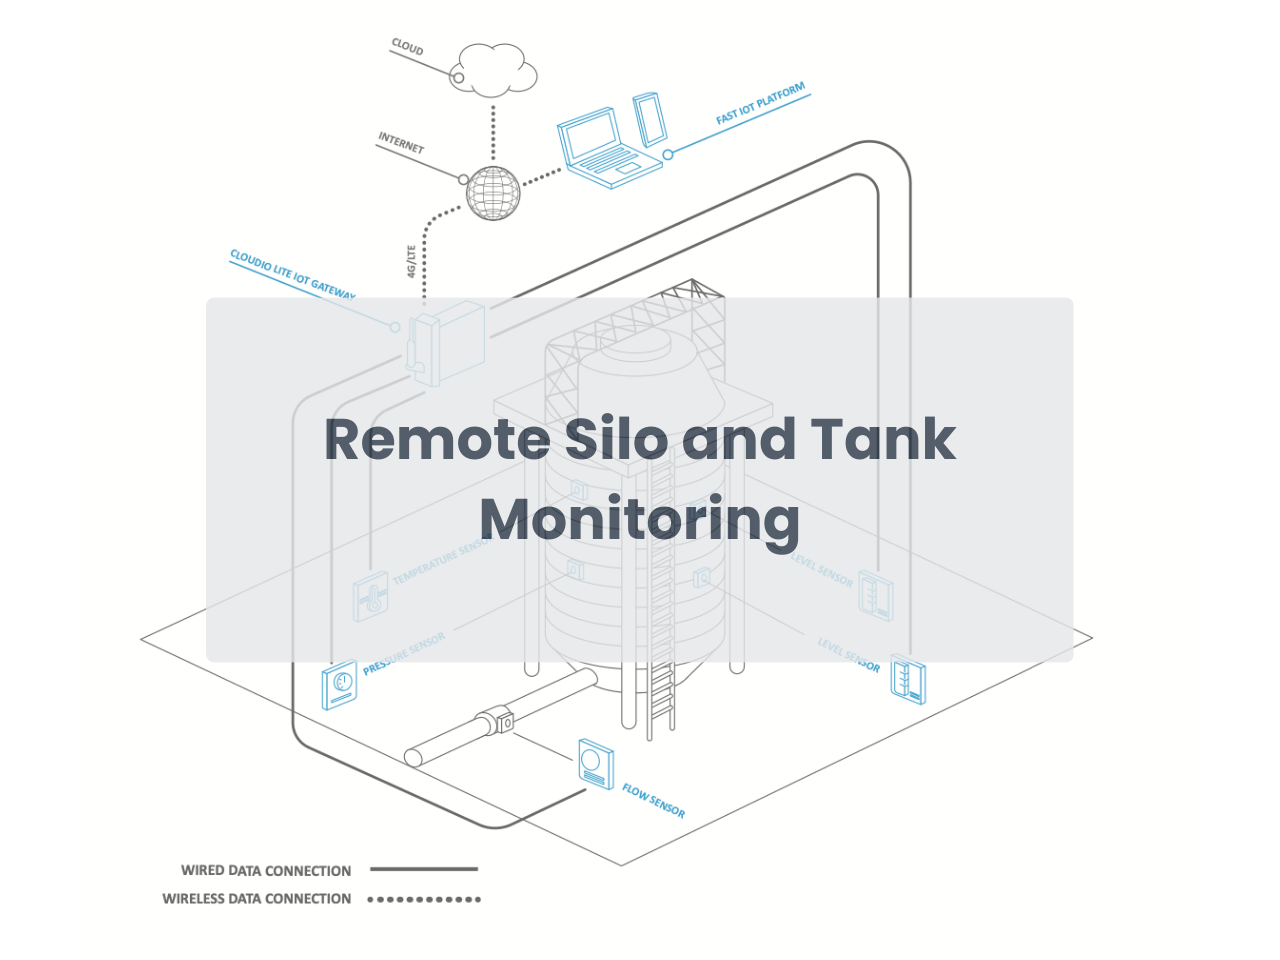 Remote Silo and Tank Monitoring